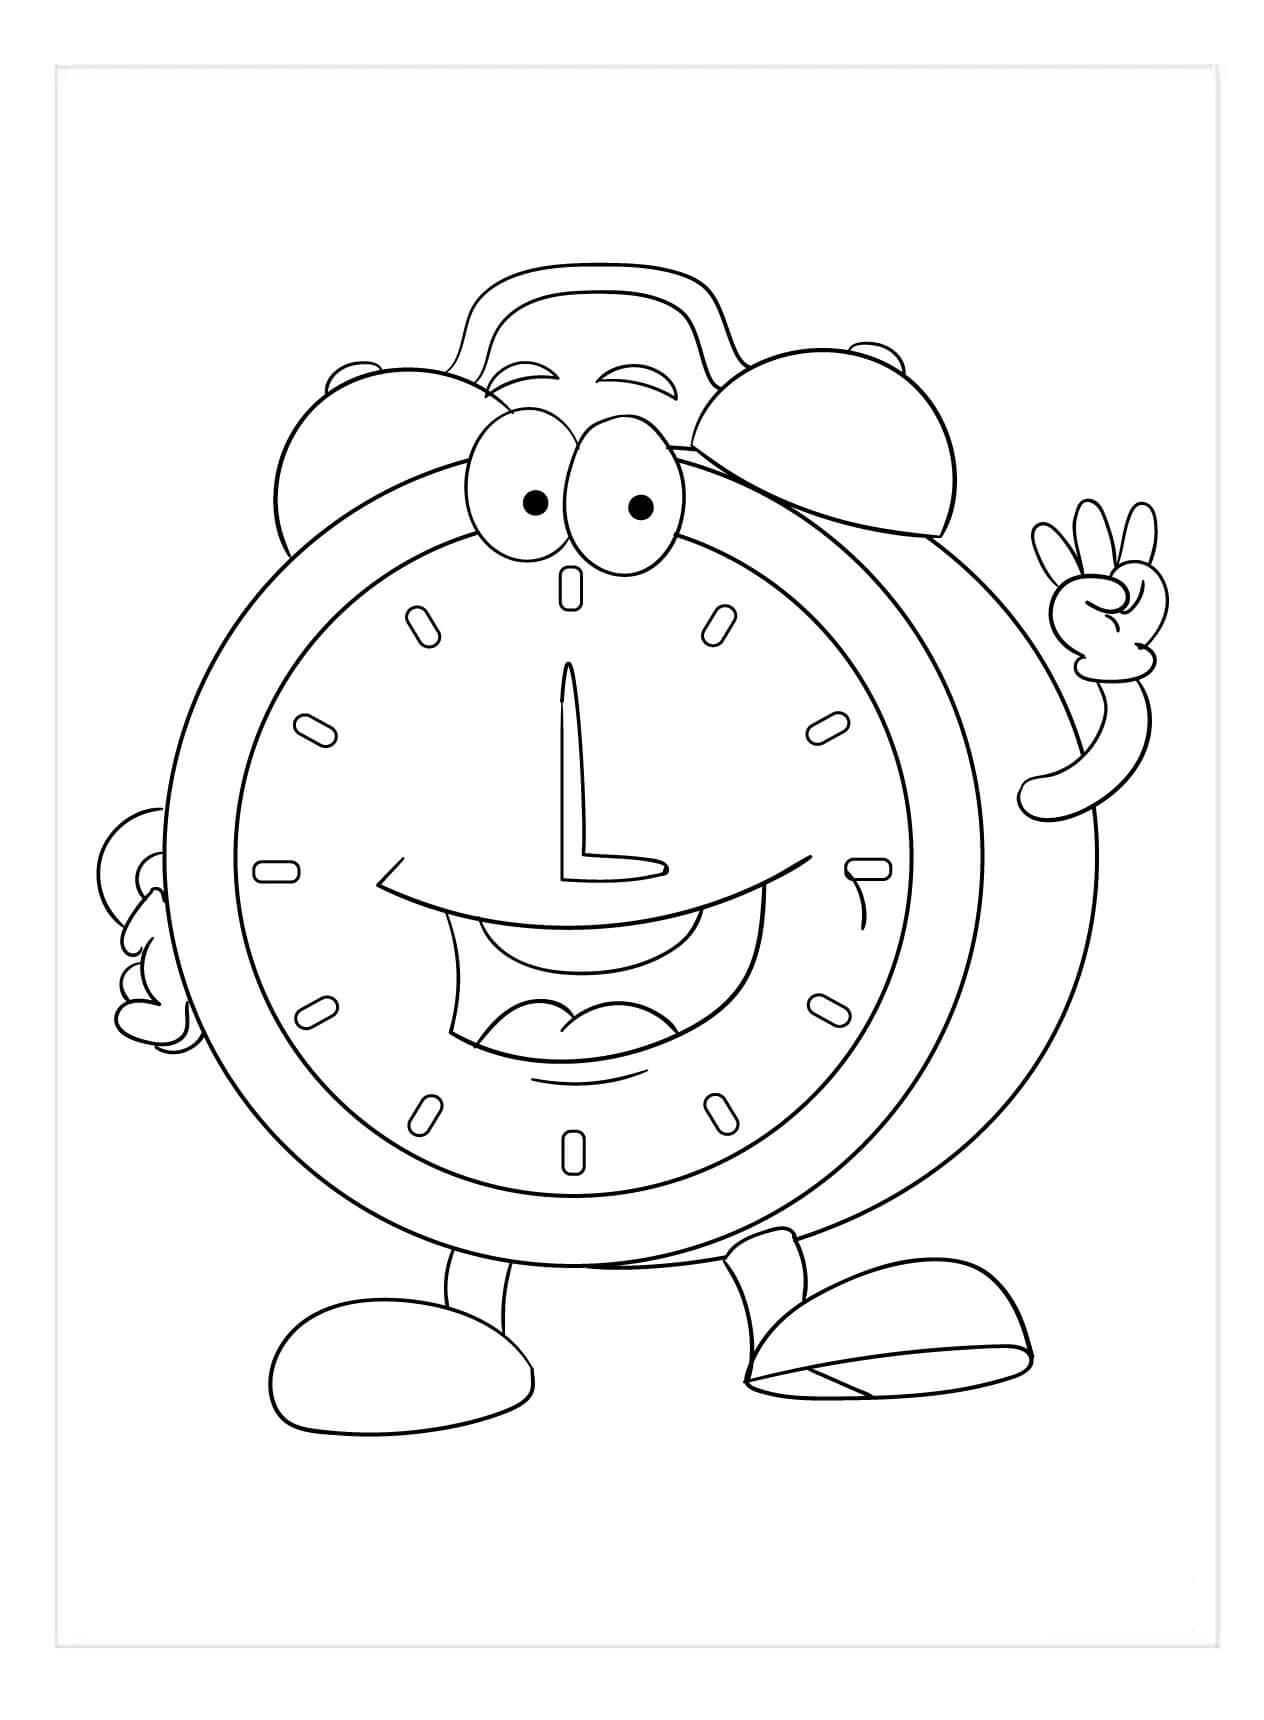 Une Horloge Amusante coloring page